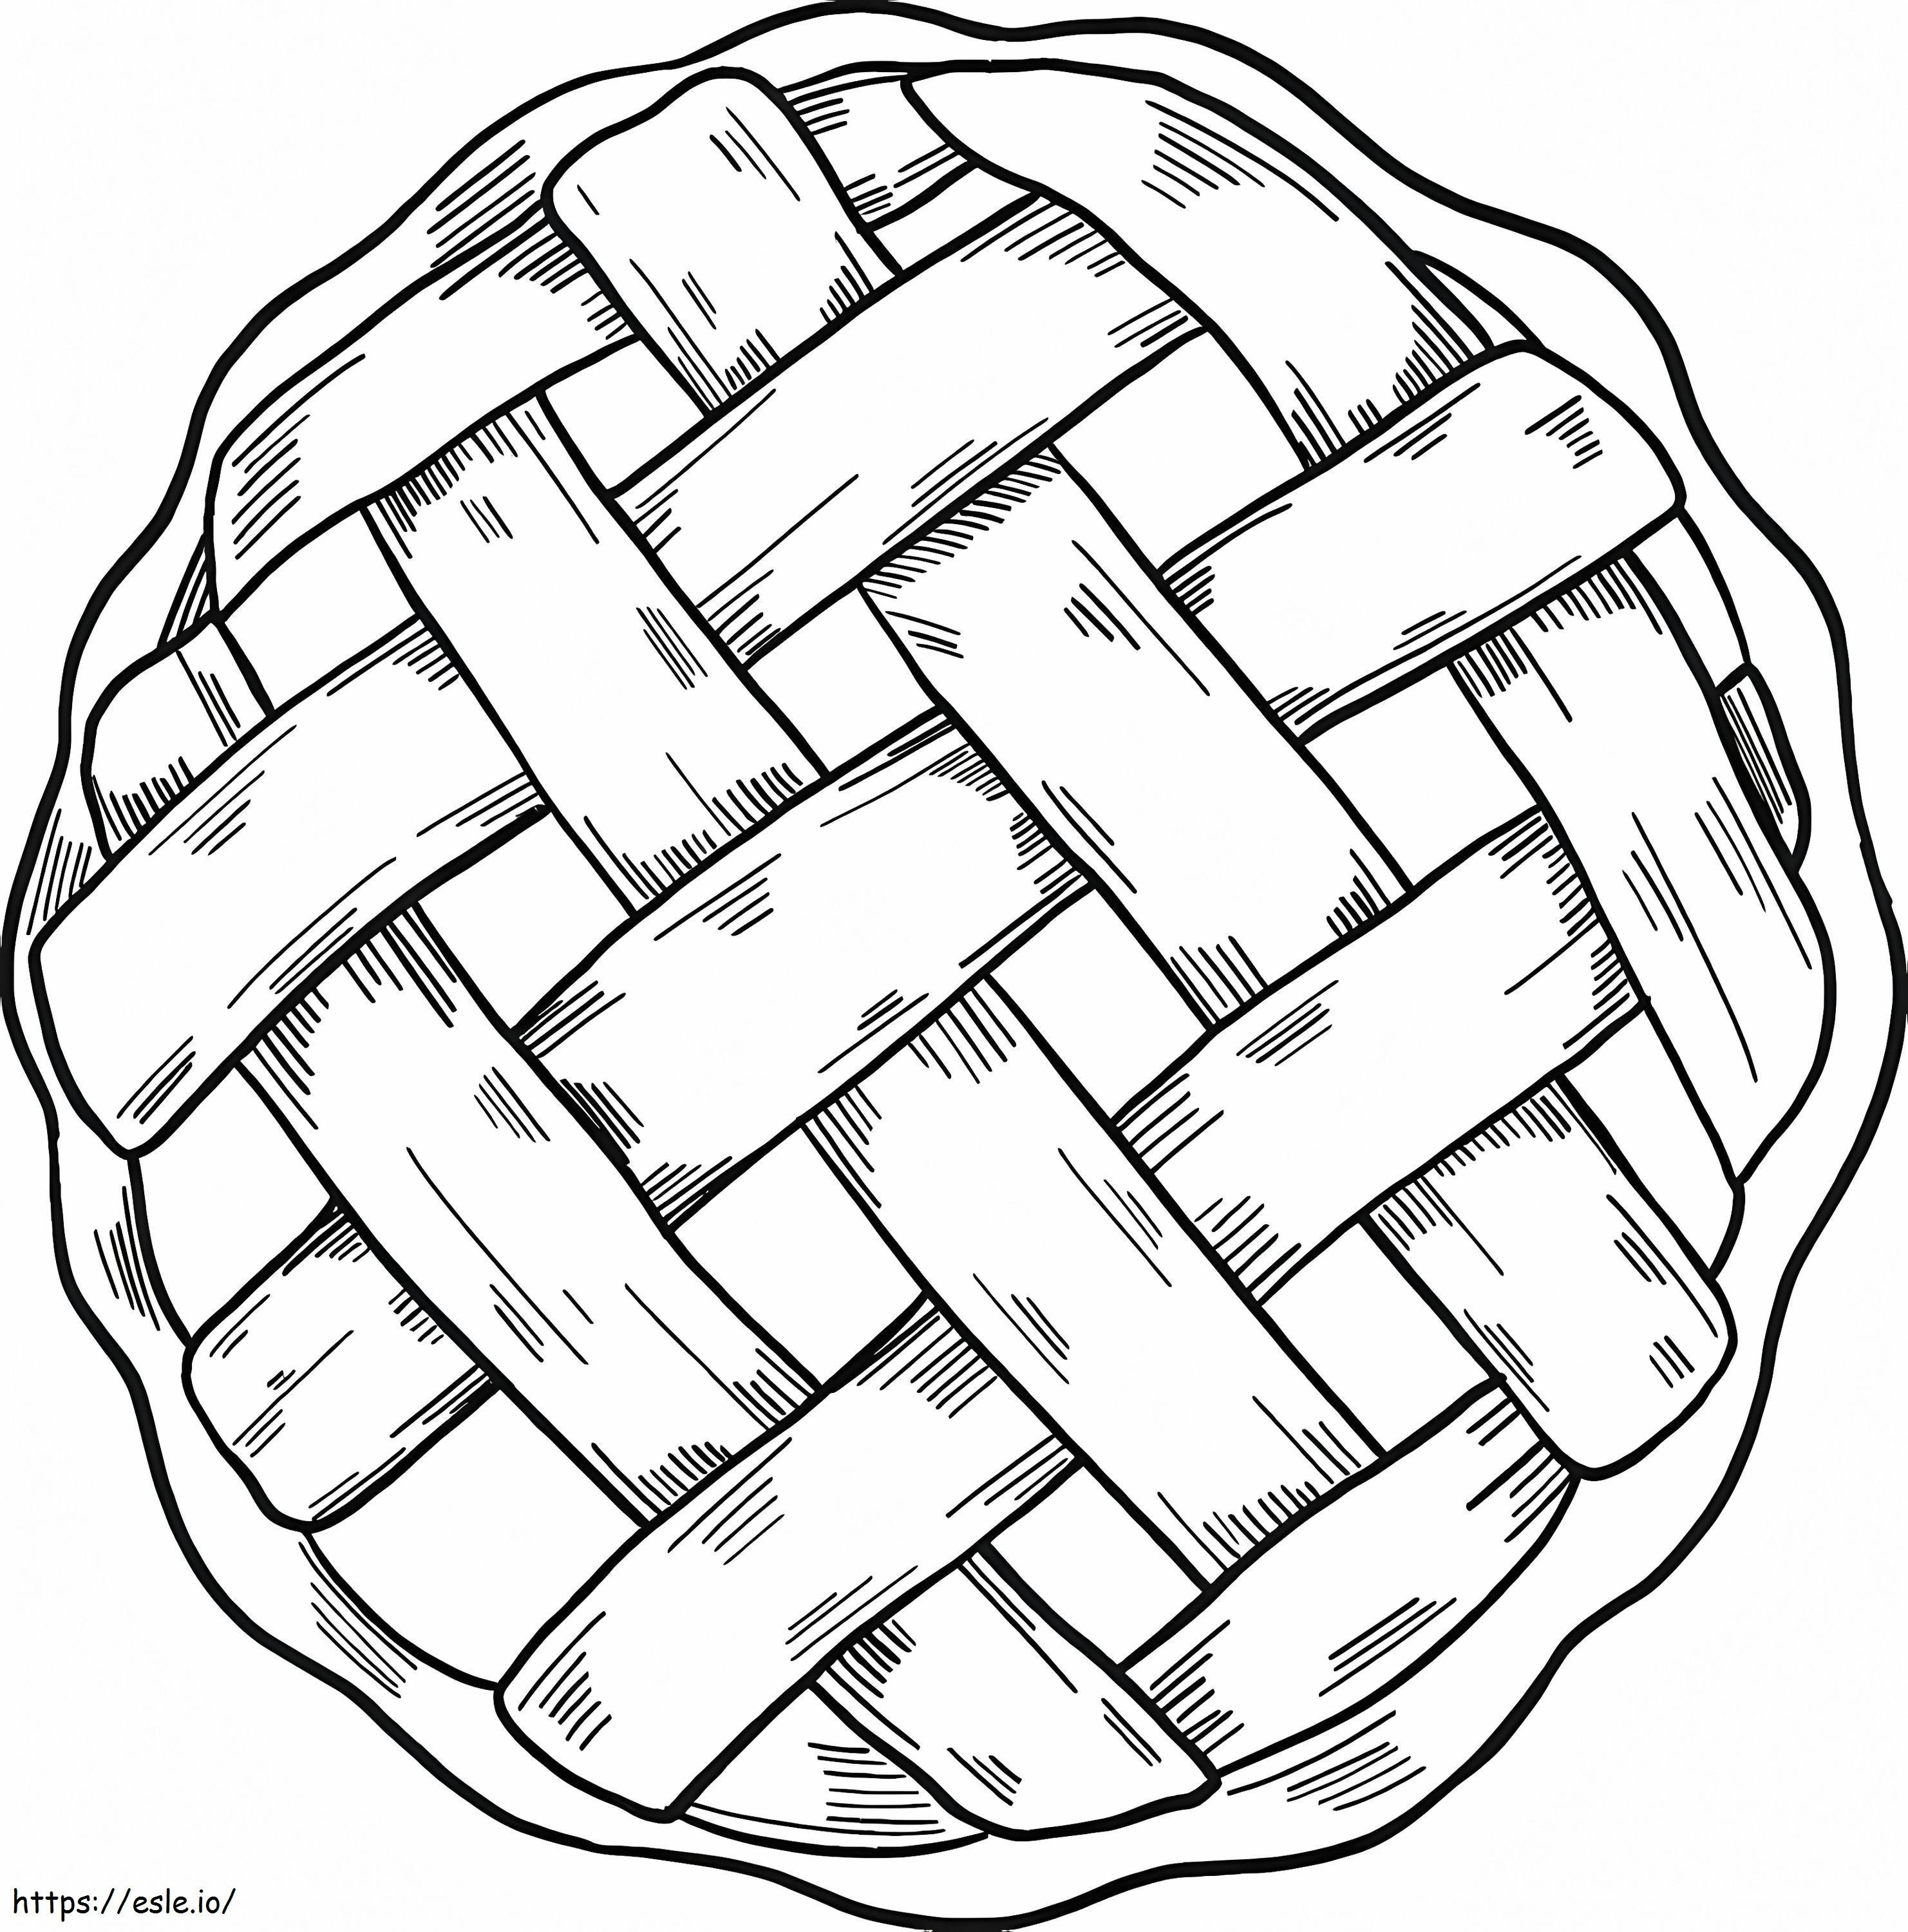 Delicious Apple Pie coloring page